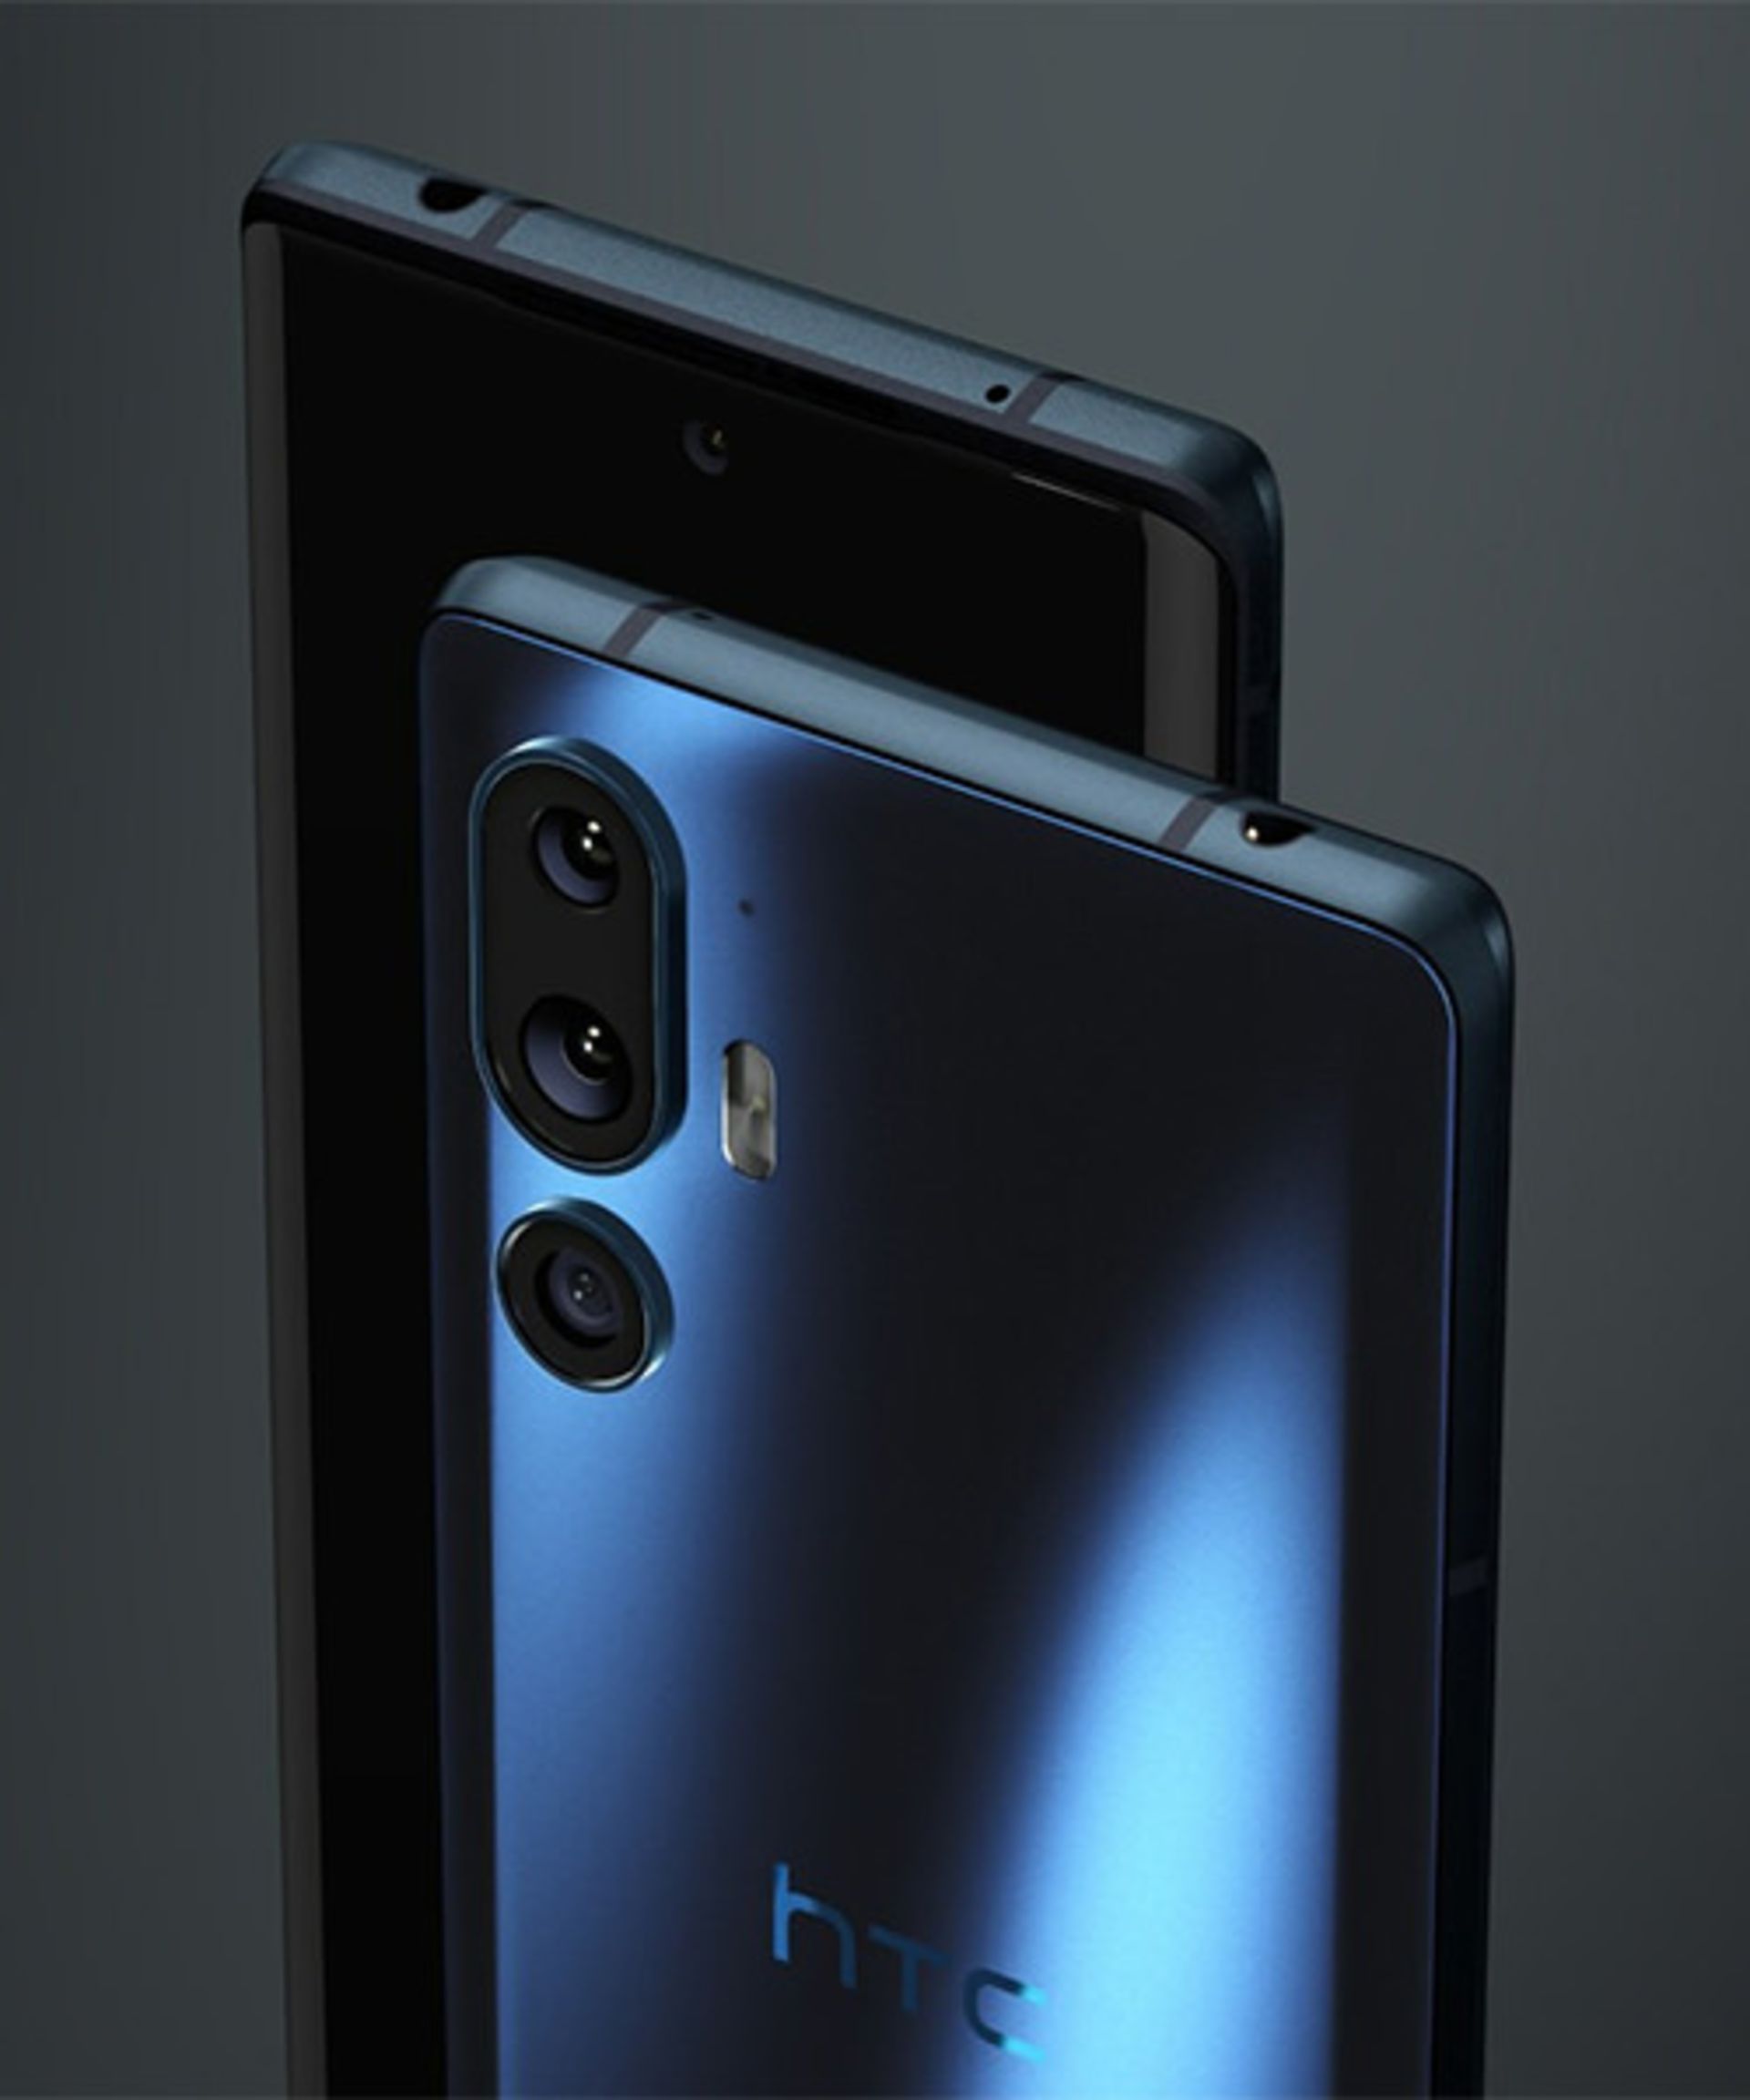 نمای دوربین پنل پشتی در کنار نمای پنل جلویی گوشی HTC مدل U24 Pro در رنگ آبی